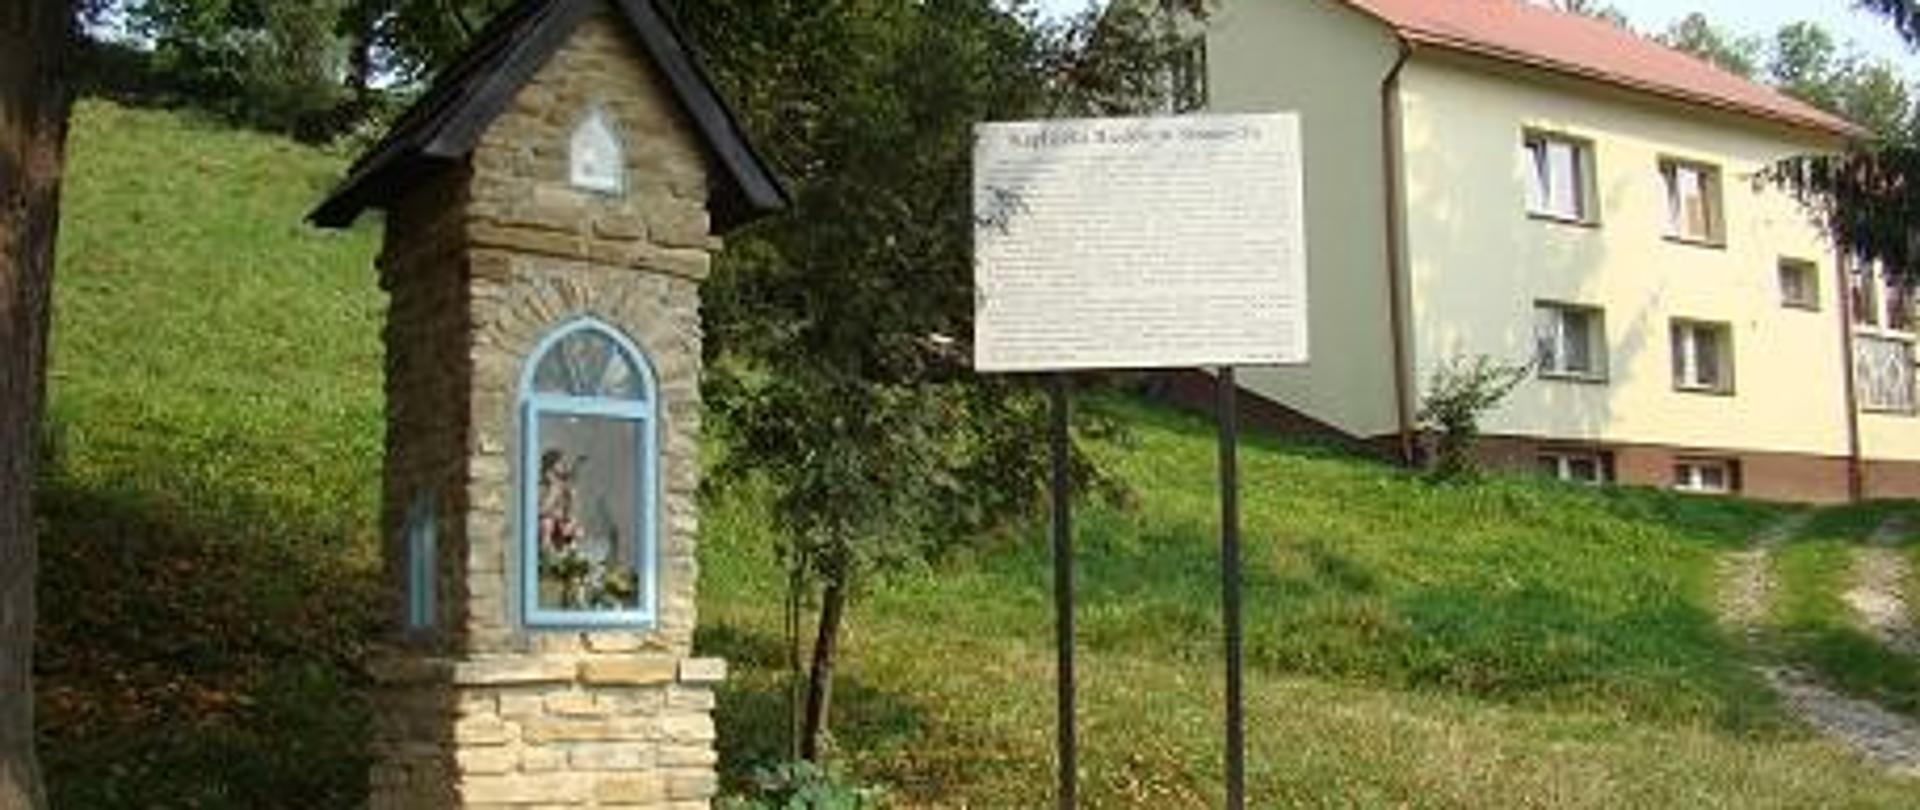 odnowiona kapliczka z tablicą informacyjną wykonana z kamienia przeszklenie z ramą w kolorze niebieskim schodki wejściowe w tle łąka i budynek